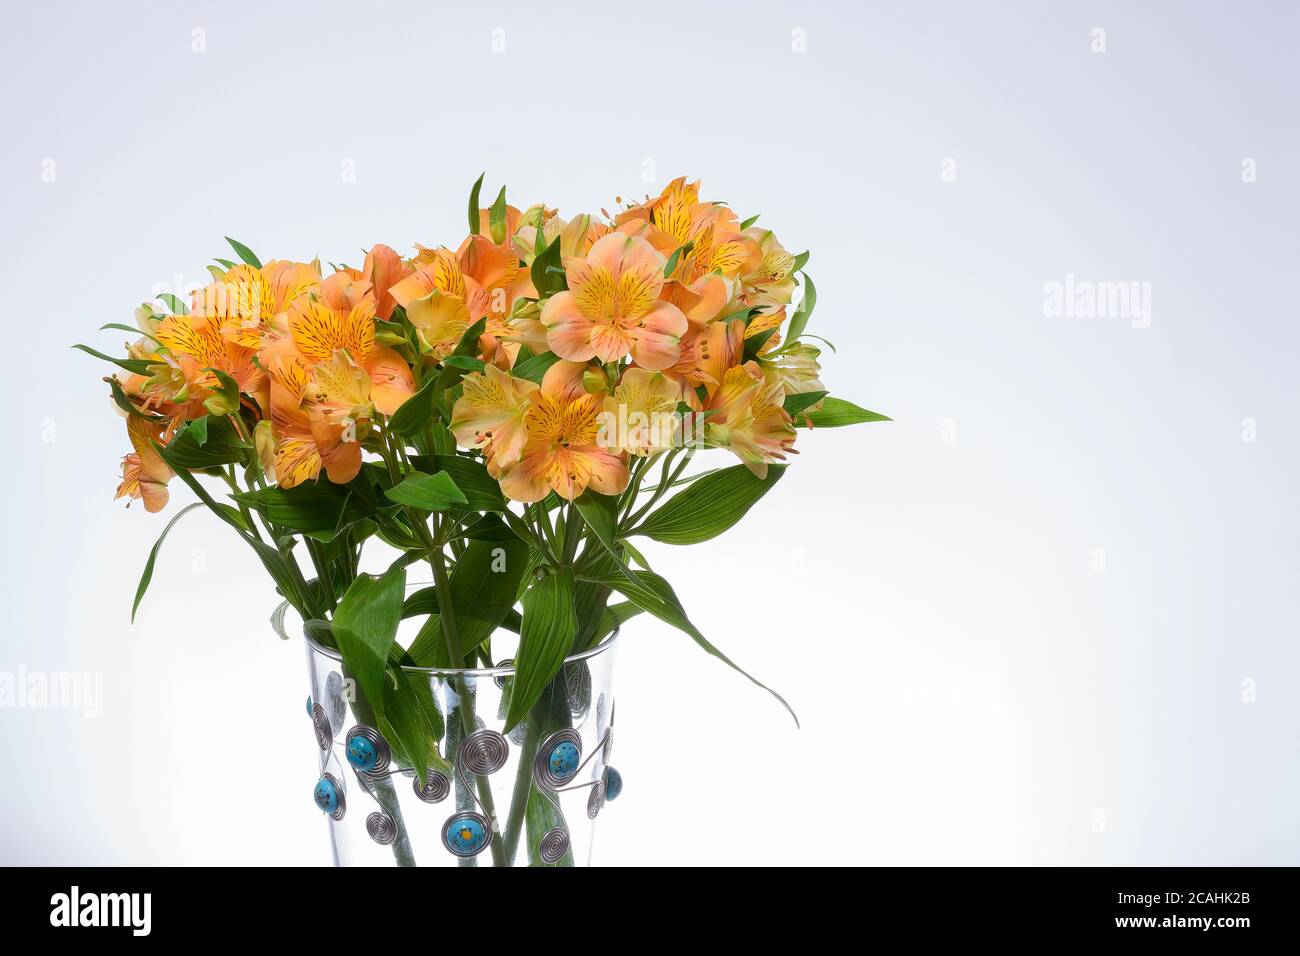 YELLOW ASTROMELIA FLOWER ON WHITE BACKGROUND Stock Photo